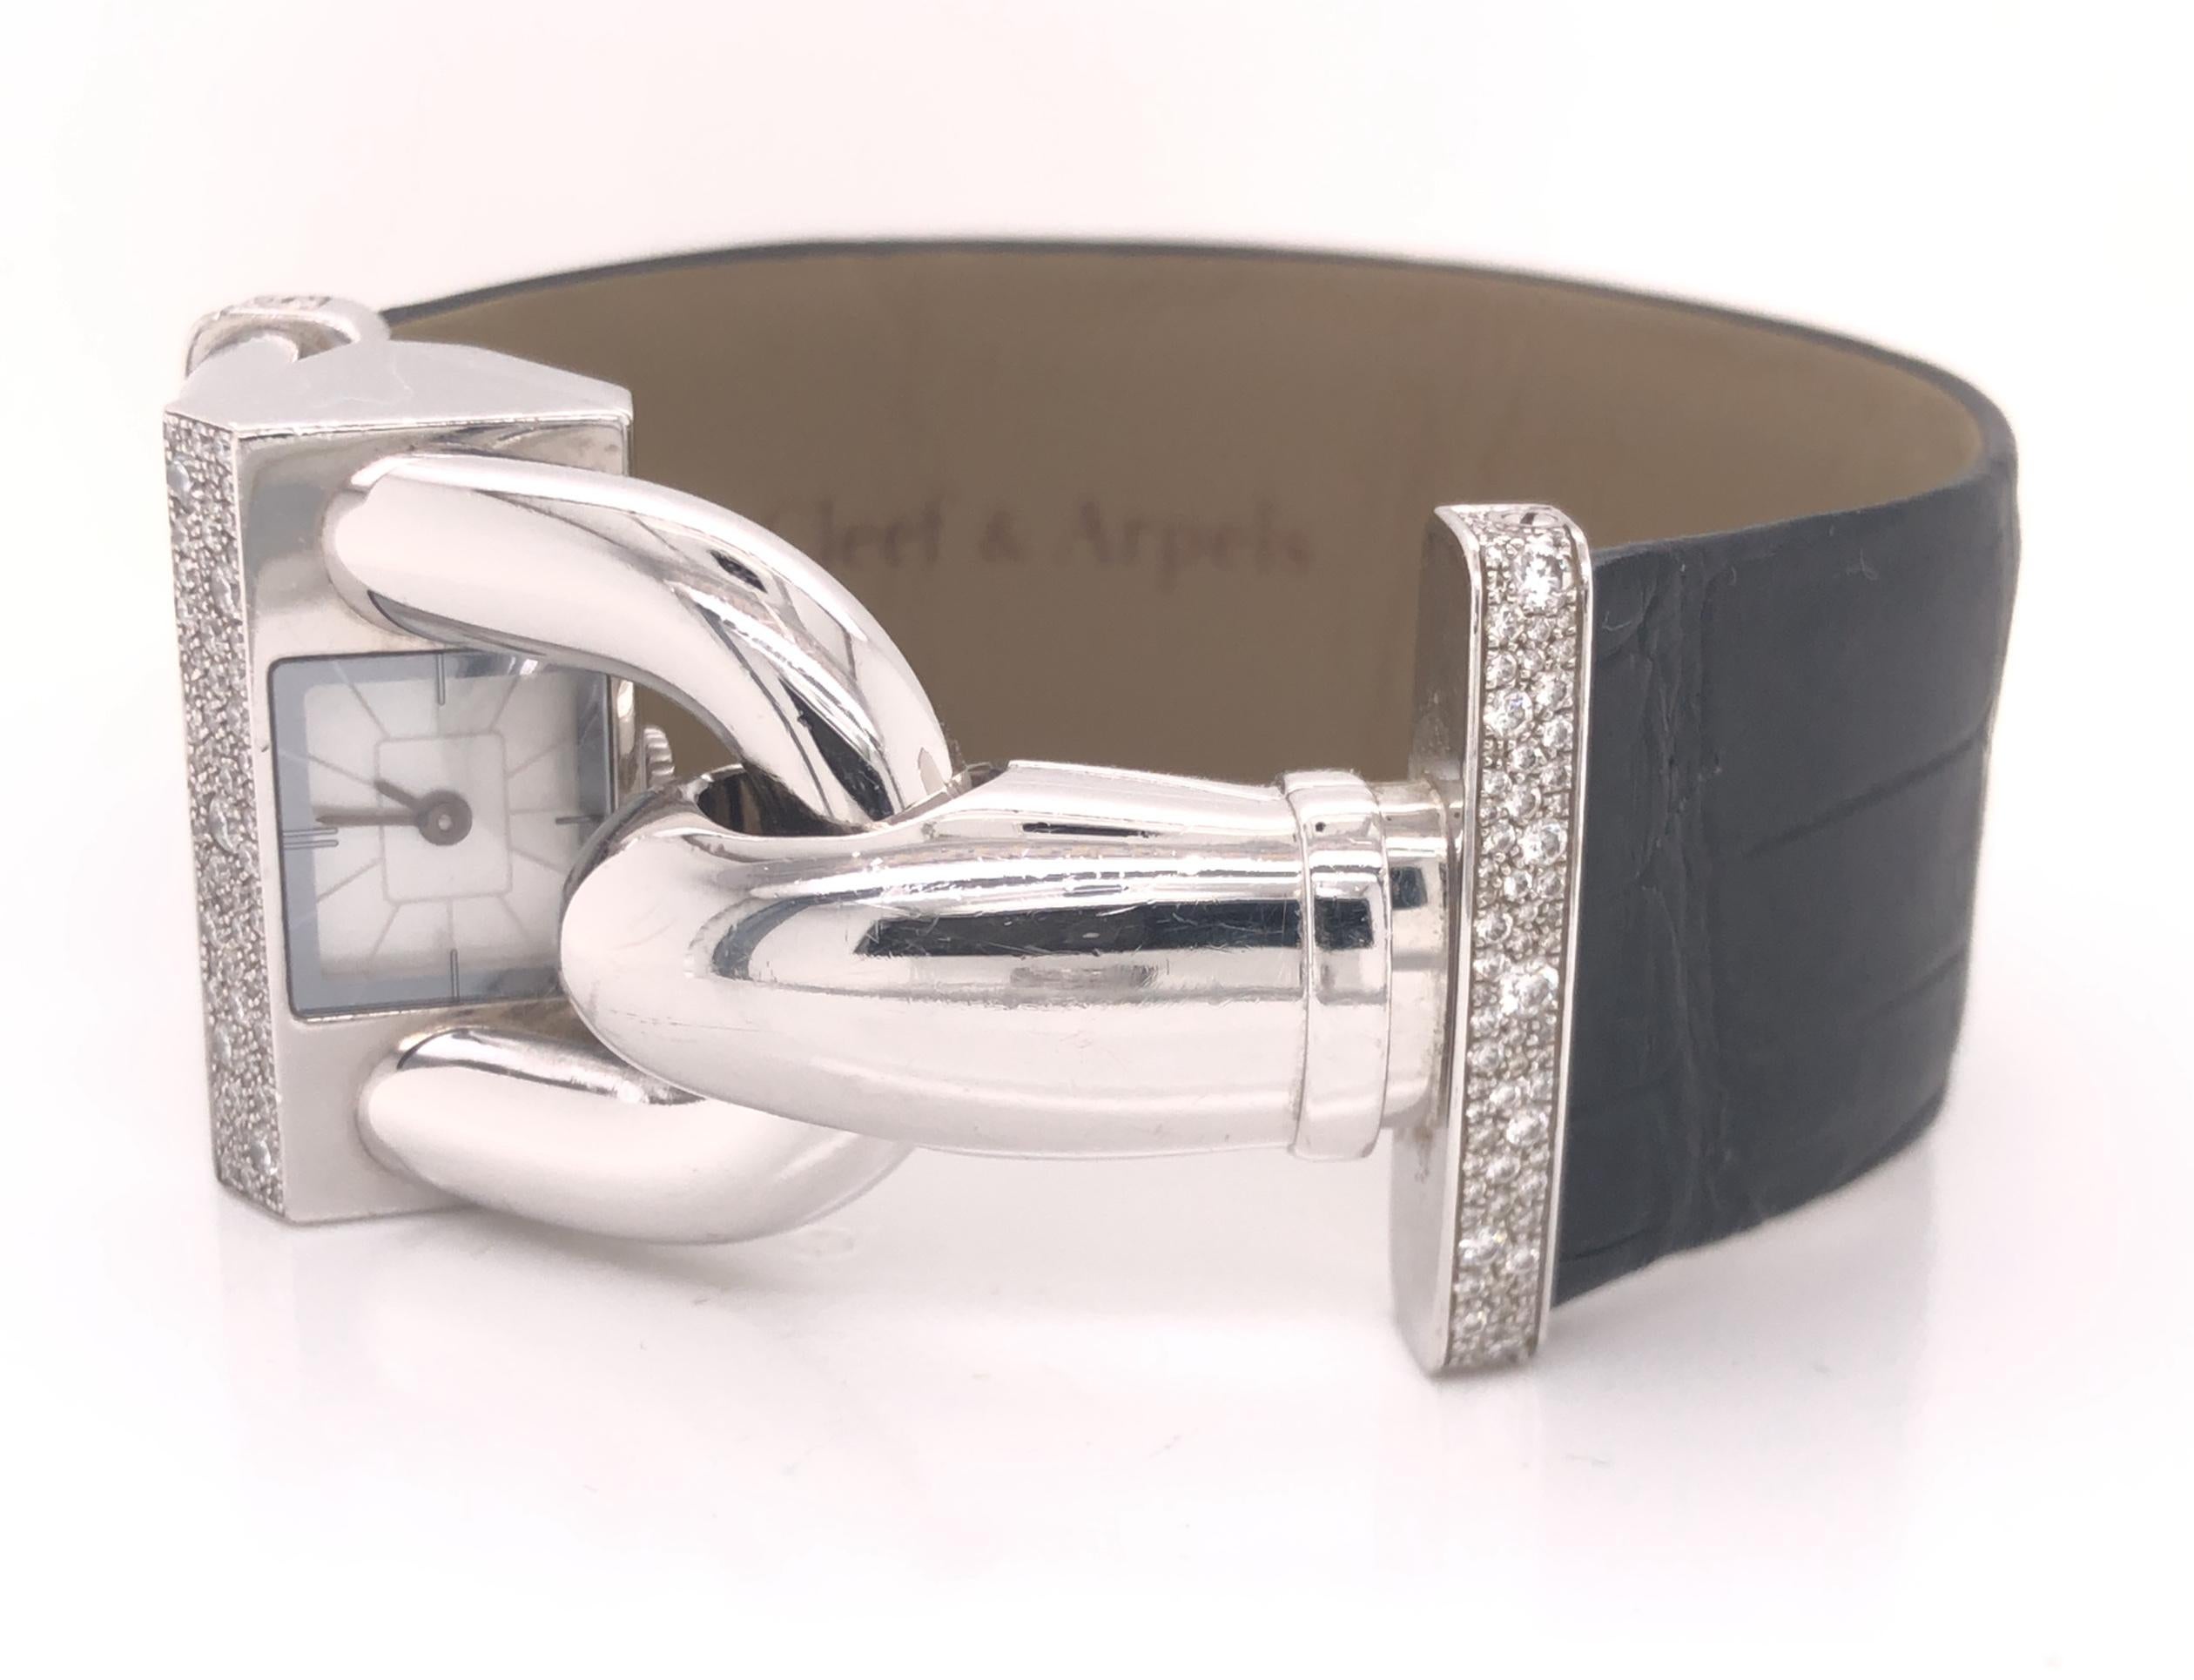 Audacieuse et intemporelle, la montre Cadenas de Van Cleef & Arpels est aussi contemporaine aujourd'hui qu'elle l'était lors de sa création en 1935. Son design distinctif présente un cadran incliné permettant de lire l'heure en toute discrétion,